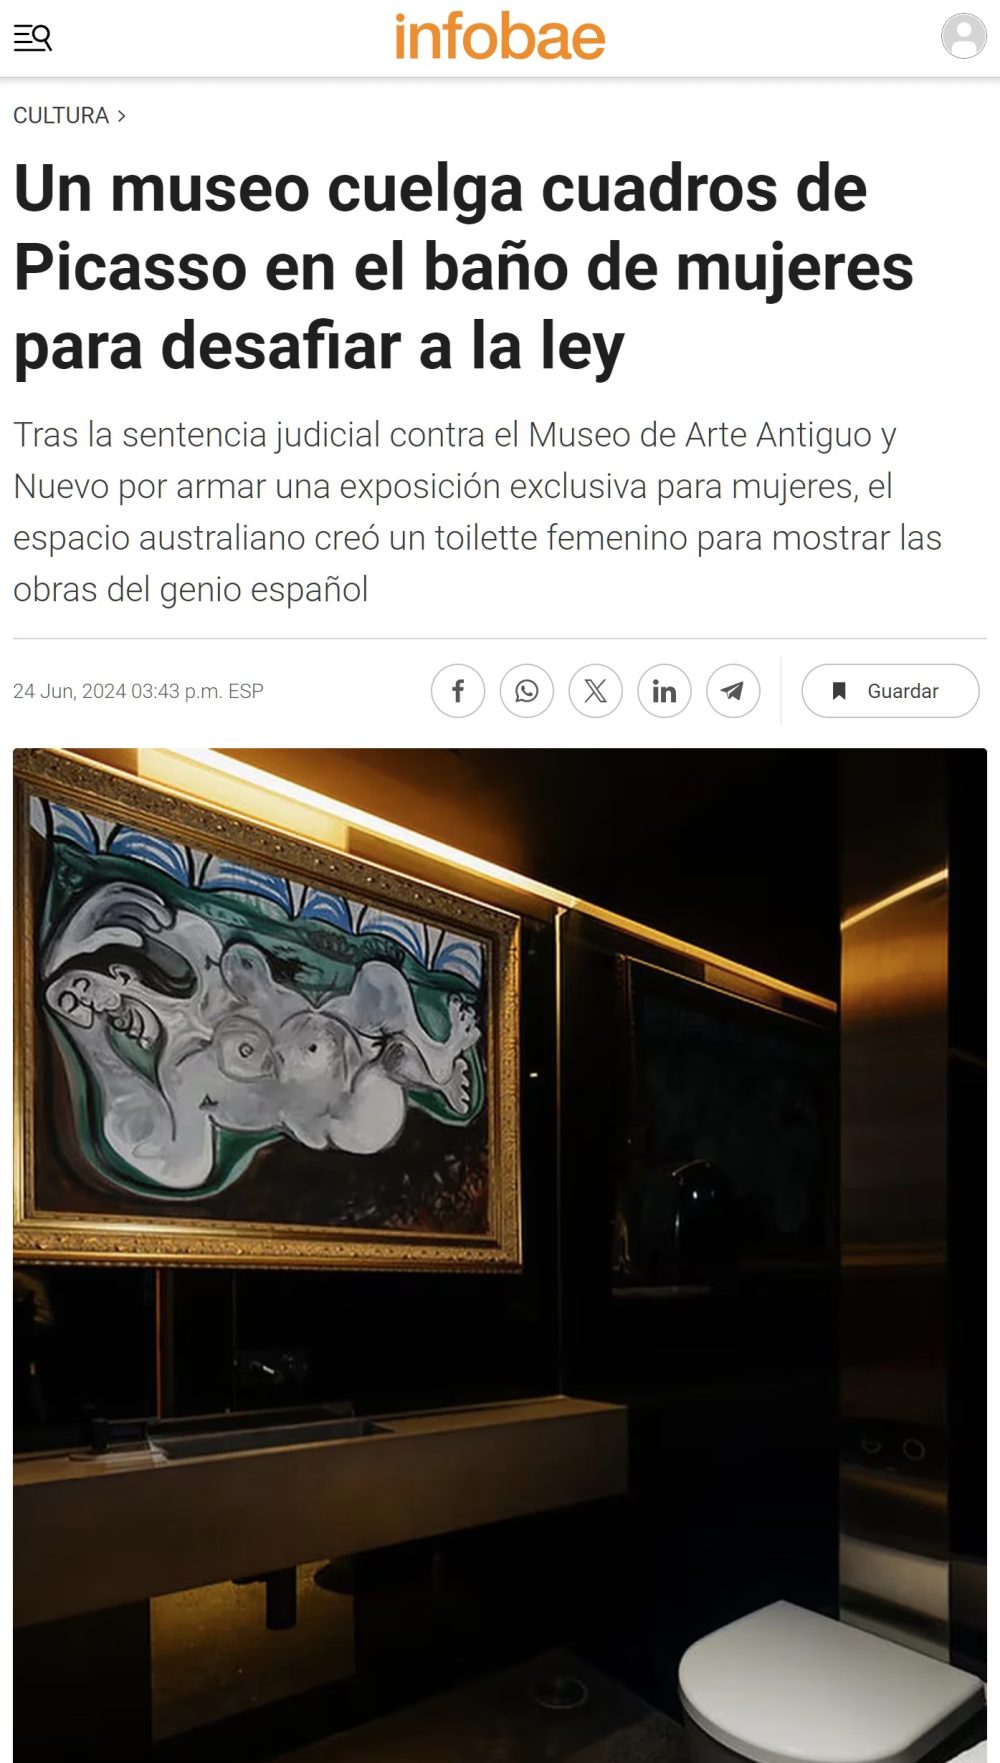 Un museo cuelga cuadros de Picasso en el baño de mujeres para desafiar a la ley